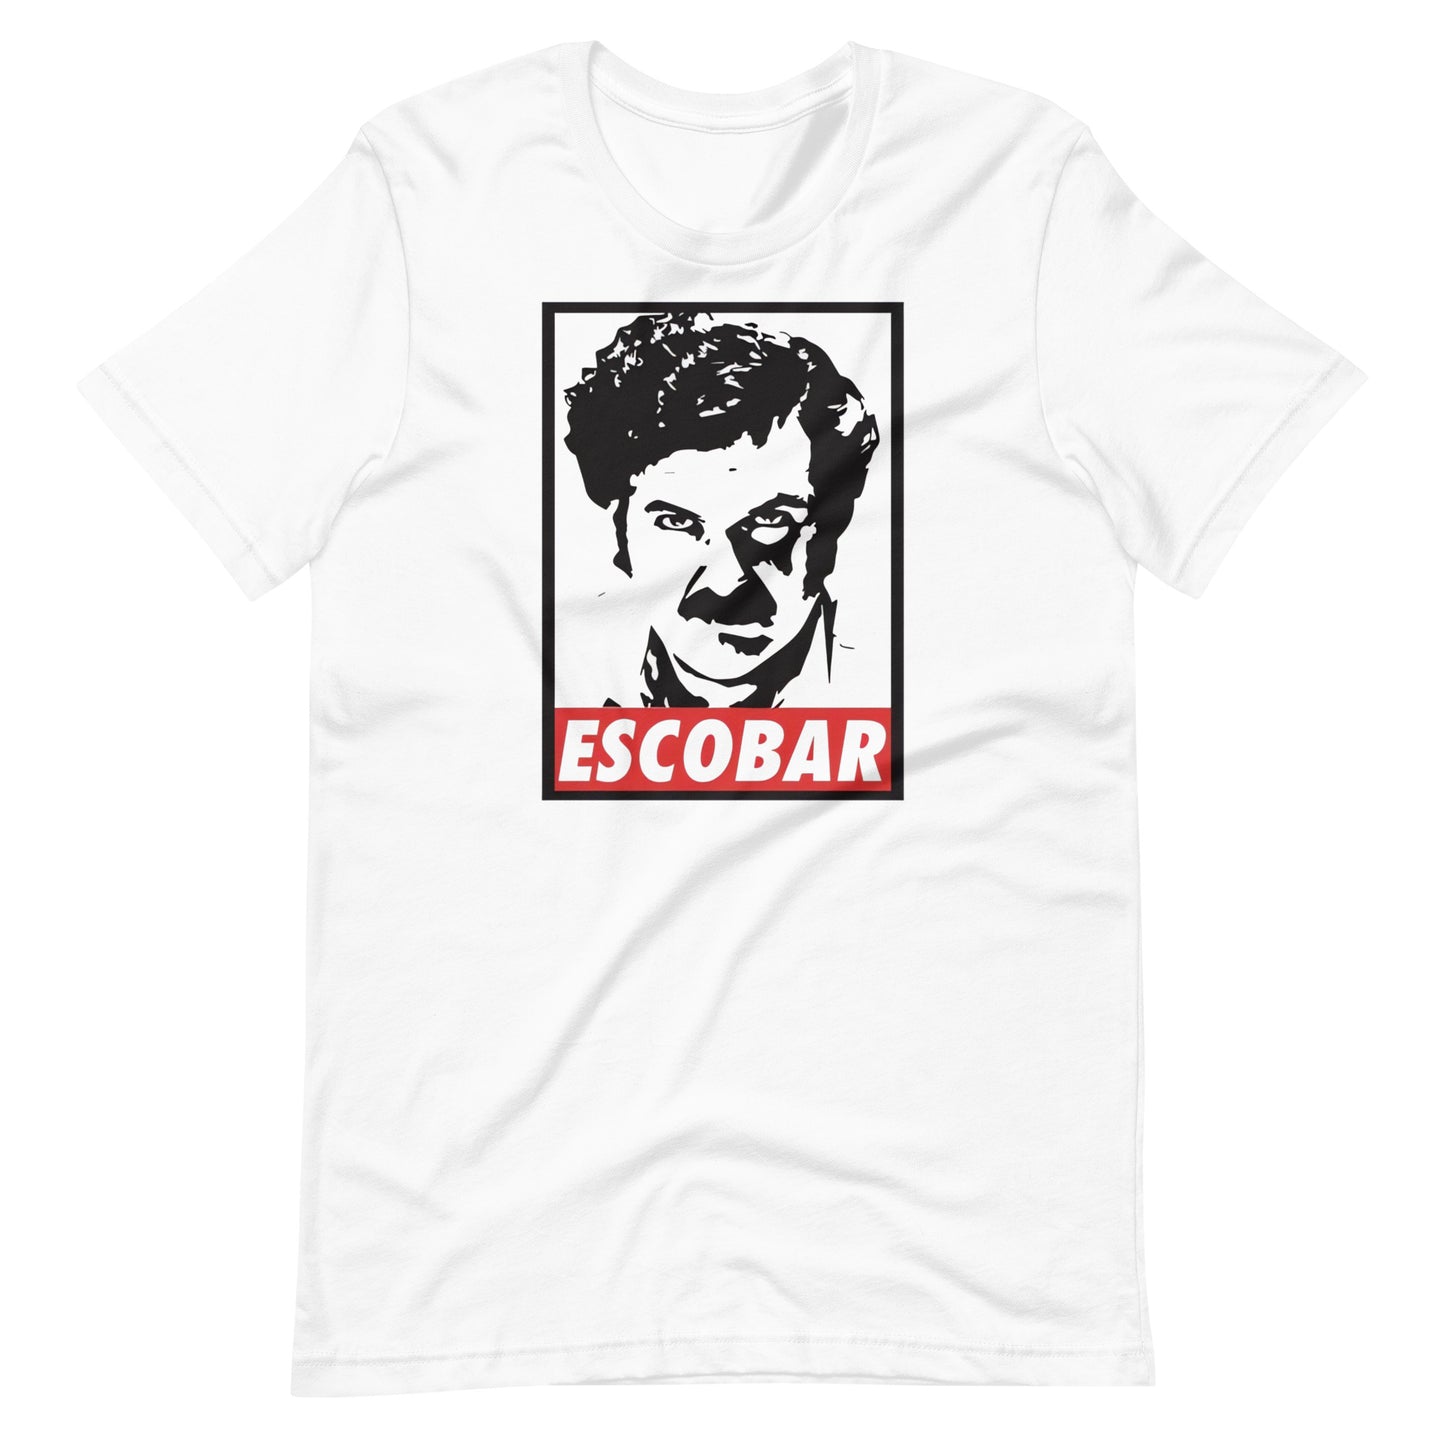 Playera de Escobar,Descubre calidad excepcional y estampados duraderos. Encuentra estilo y orgullo en cada prenda. Compre en LOSMIOS!